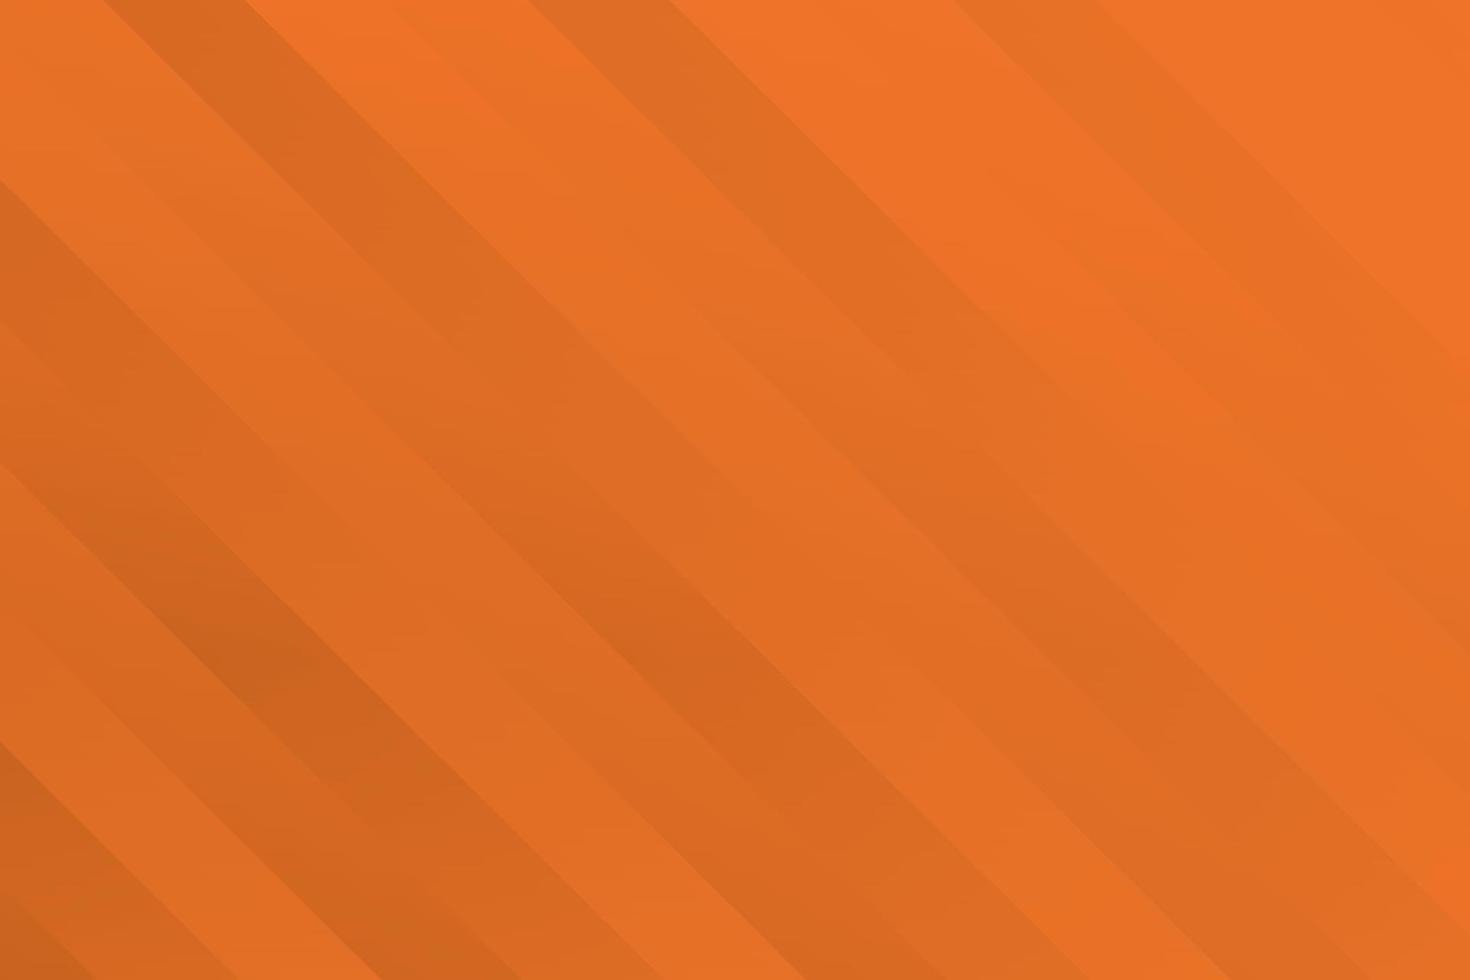 fundo de cor laranja e branco abstrato com forma geométrica. ilustração vetorial. vetor